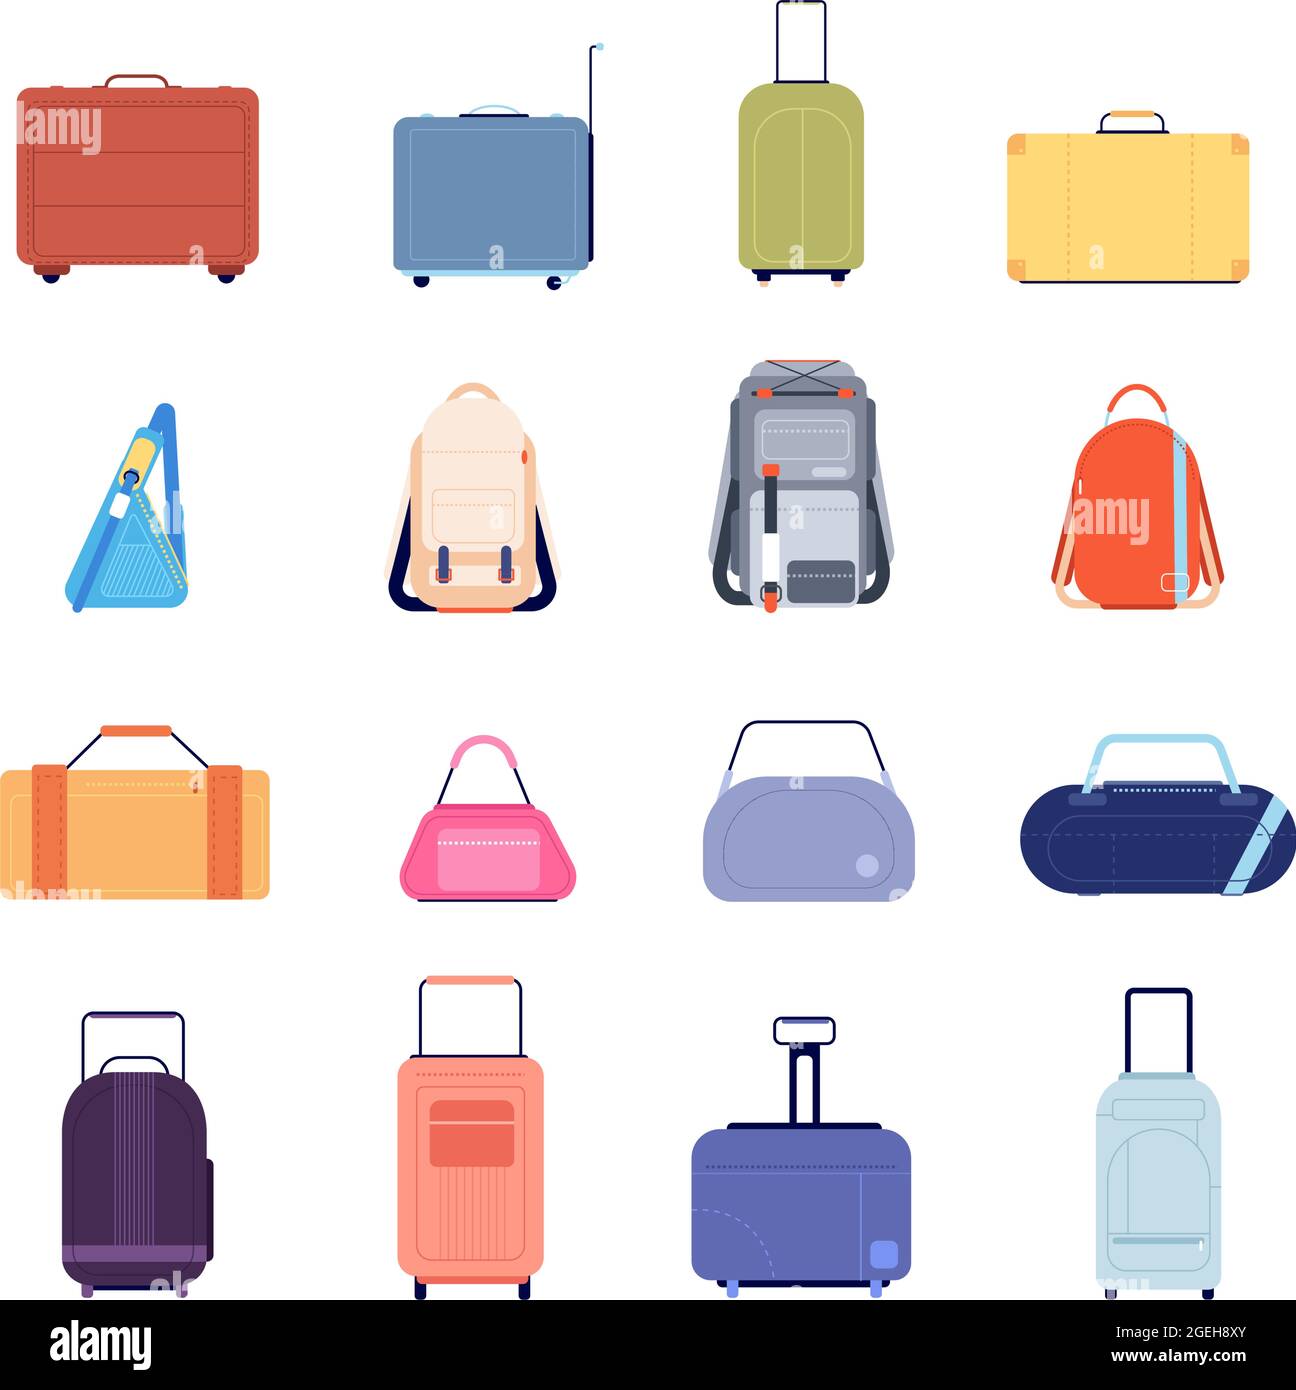 Designer Handbag Vector Stock Illustrations – 269 Designer Handbag Vector  Stock Illustrations, Vectors & Clipart - Dreamstime